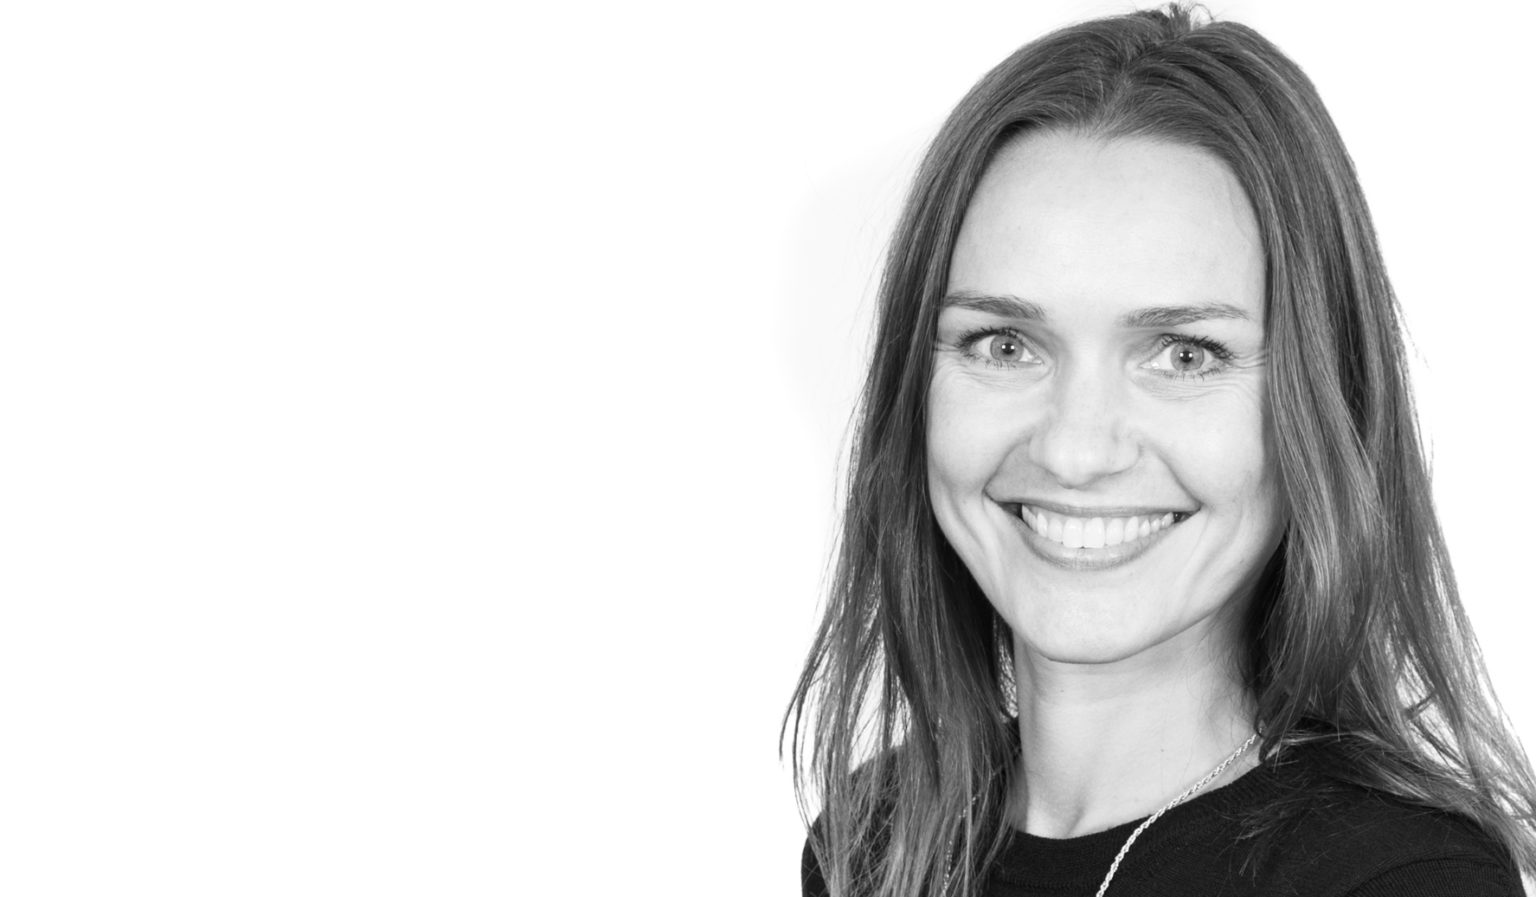 Employer branding i forandring: Interview med Natalie Birk, Employer Branding & internal communications lead hos Accenture